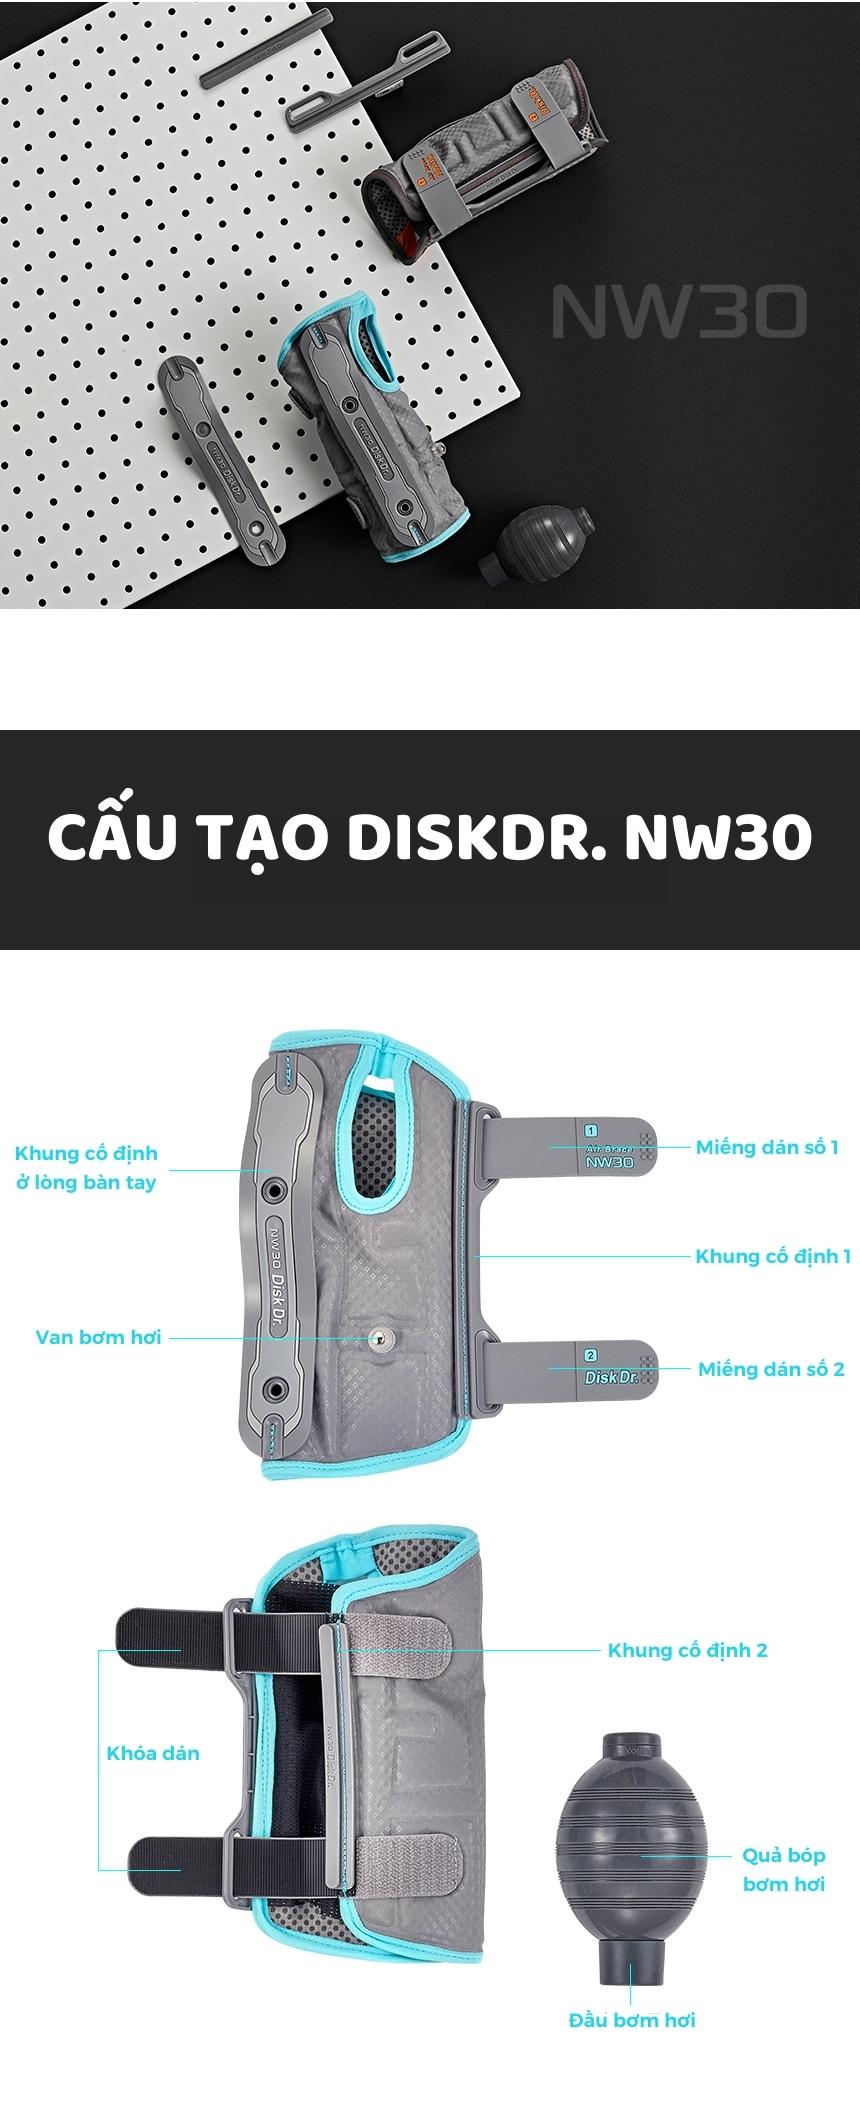 Cấu tạo của đai nẹp bảo vệ cổ tay DiskDr. NW30